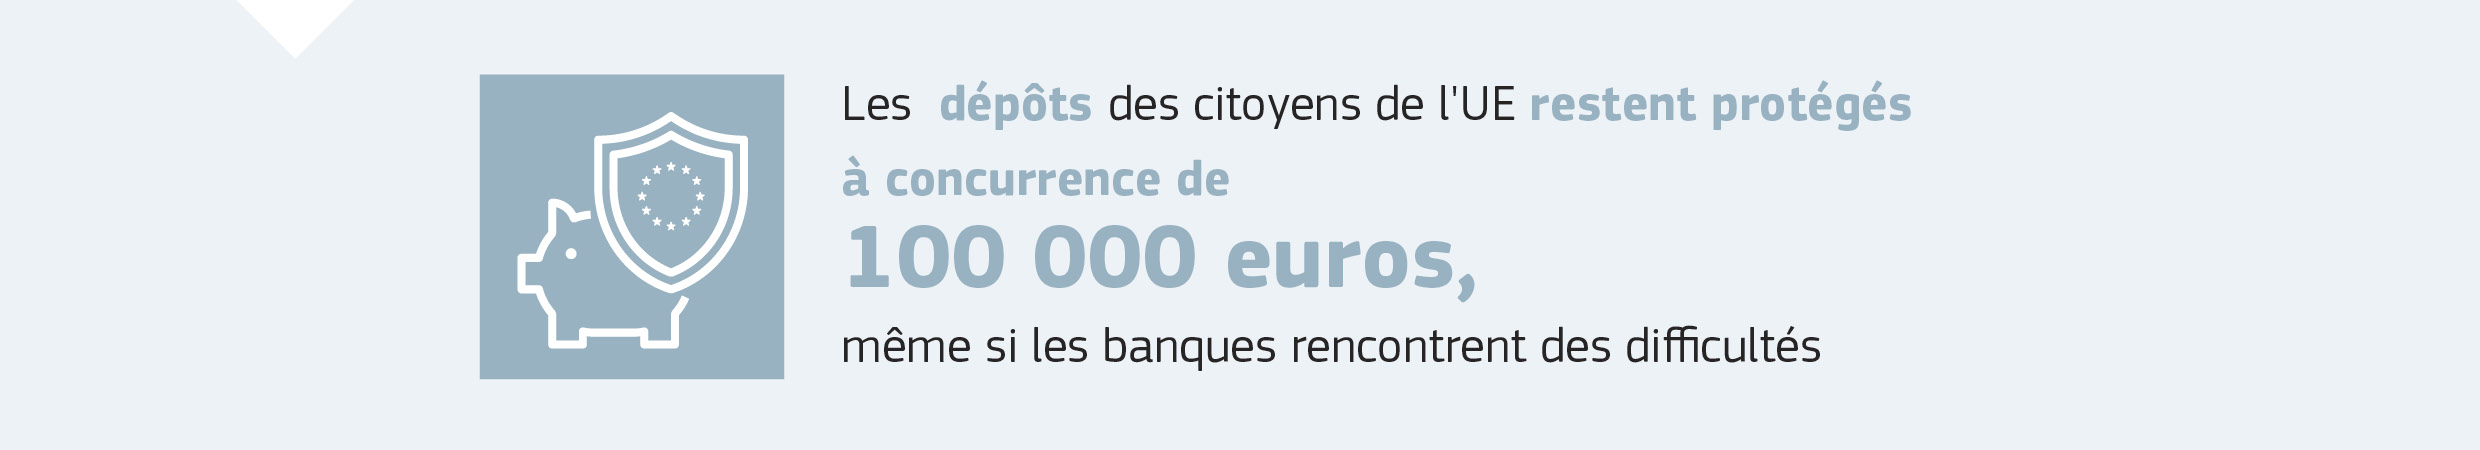 Les dépôts des citoyens de l'UE restent protégés à concurrence de 100 000 euros, même si les banques rencontrent des difficultés